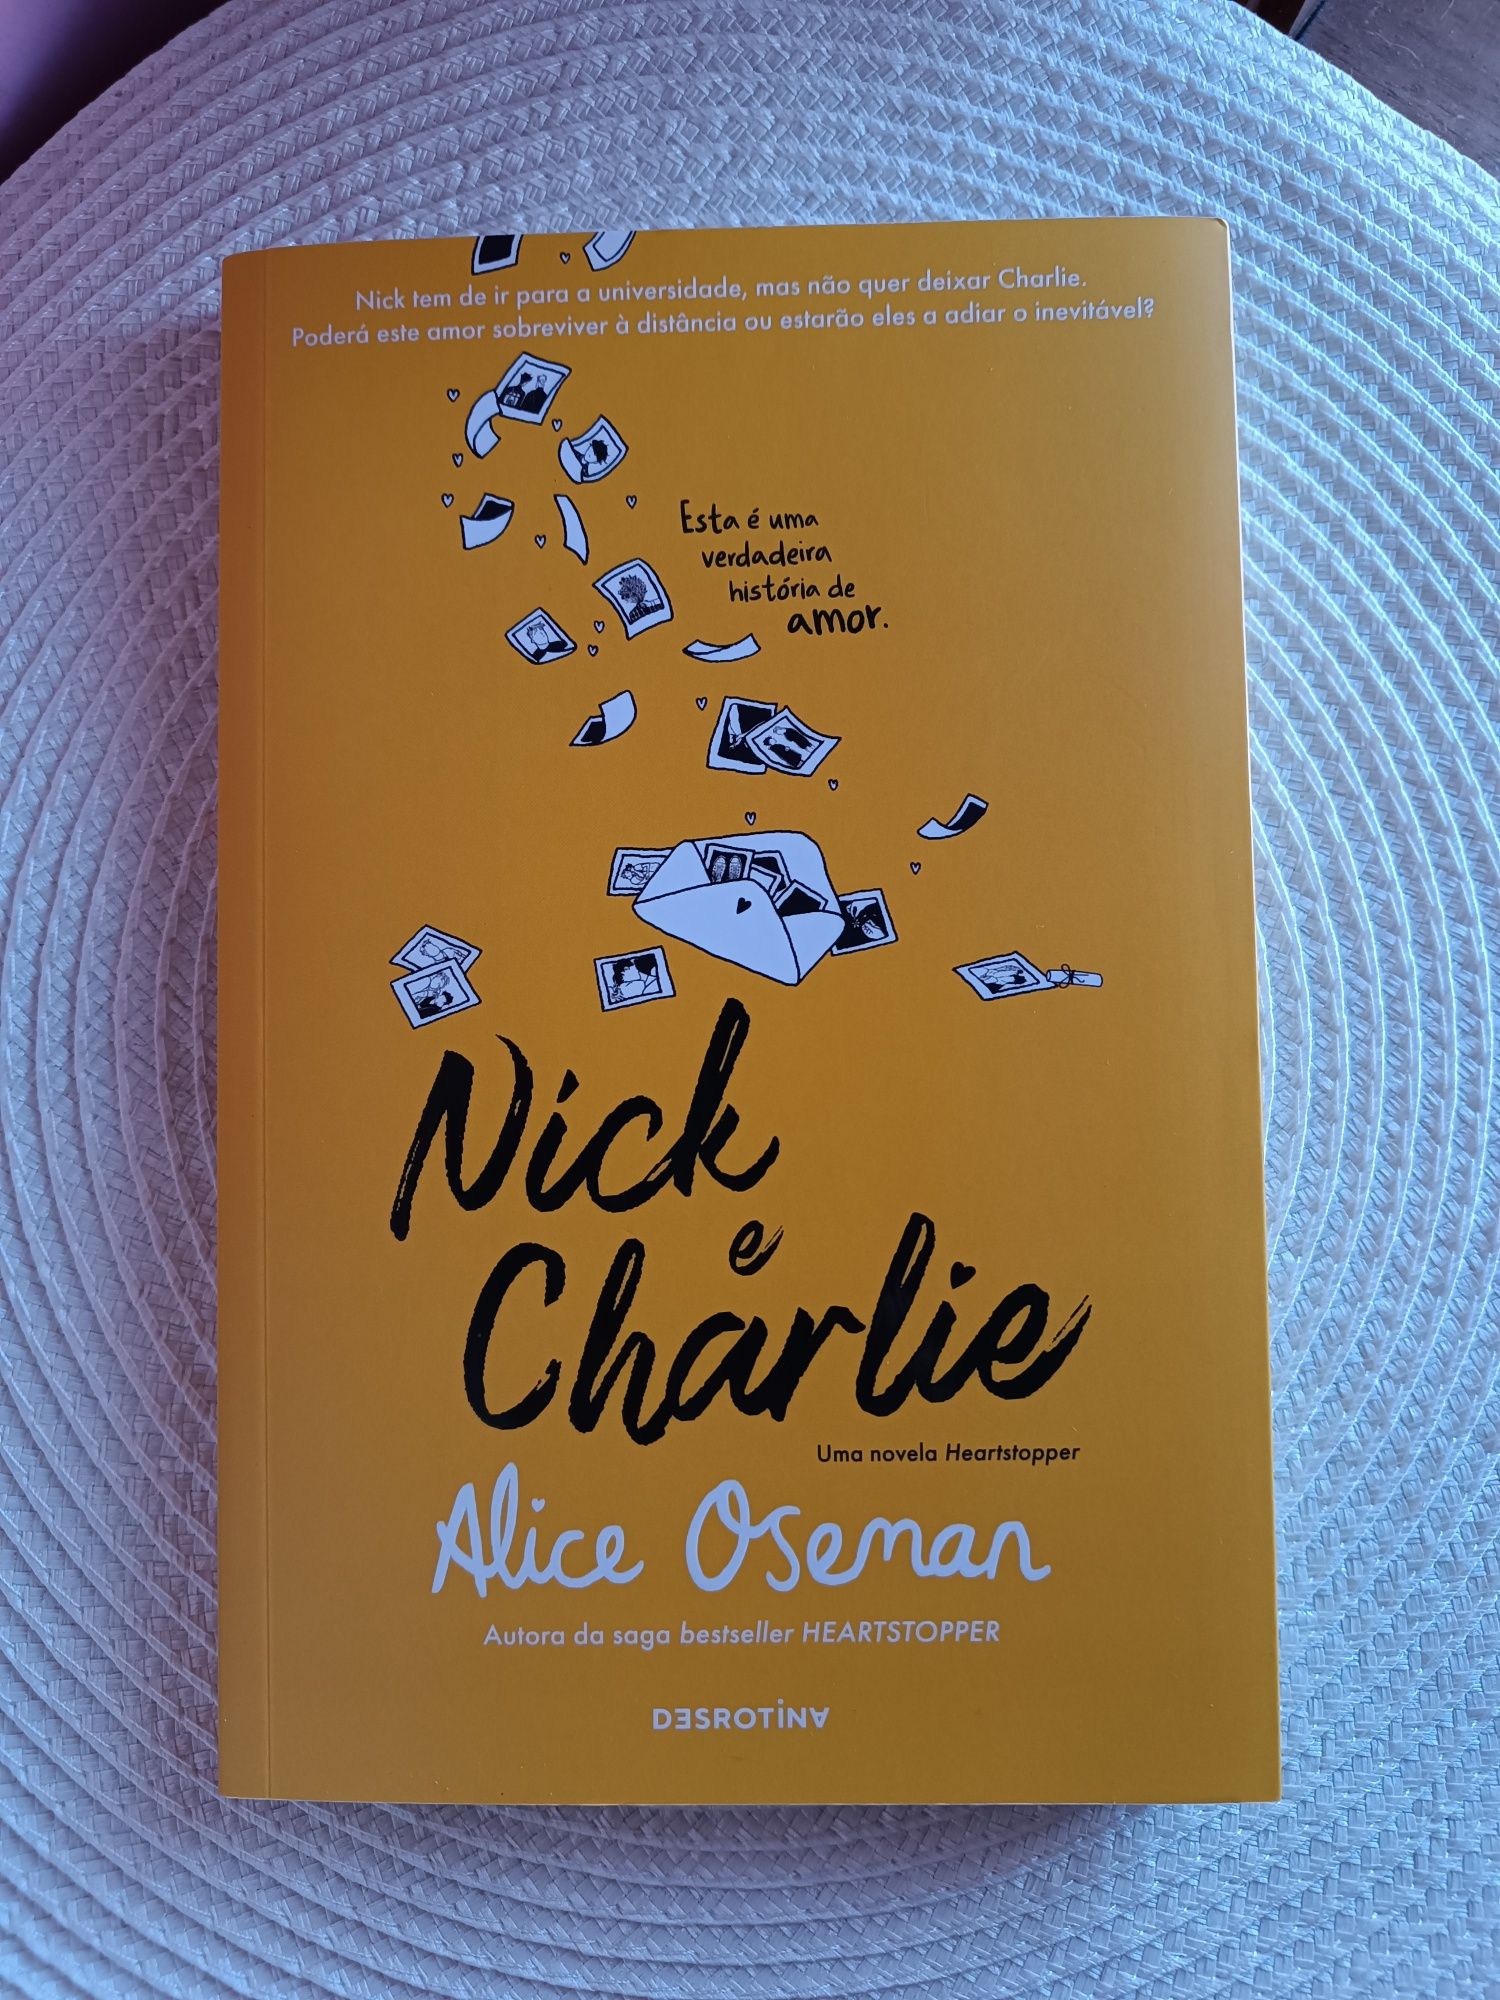 Livro "Nick e Charlie"